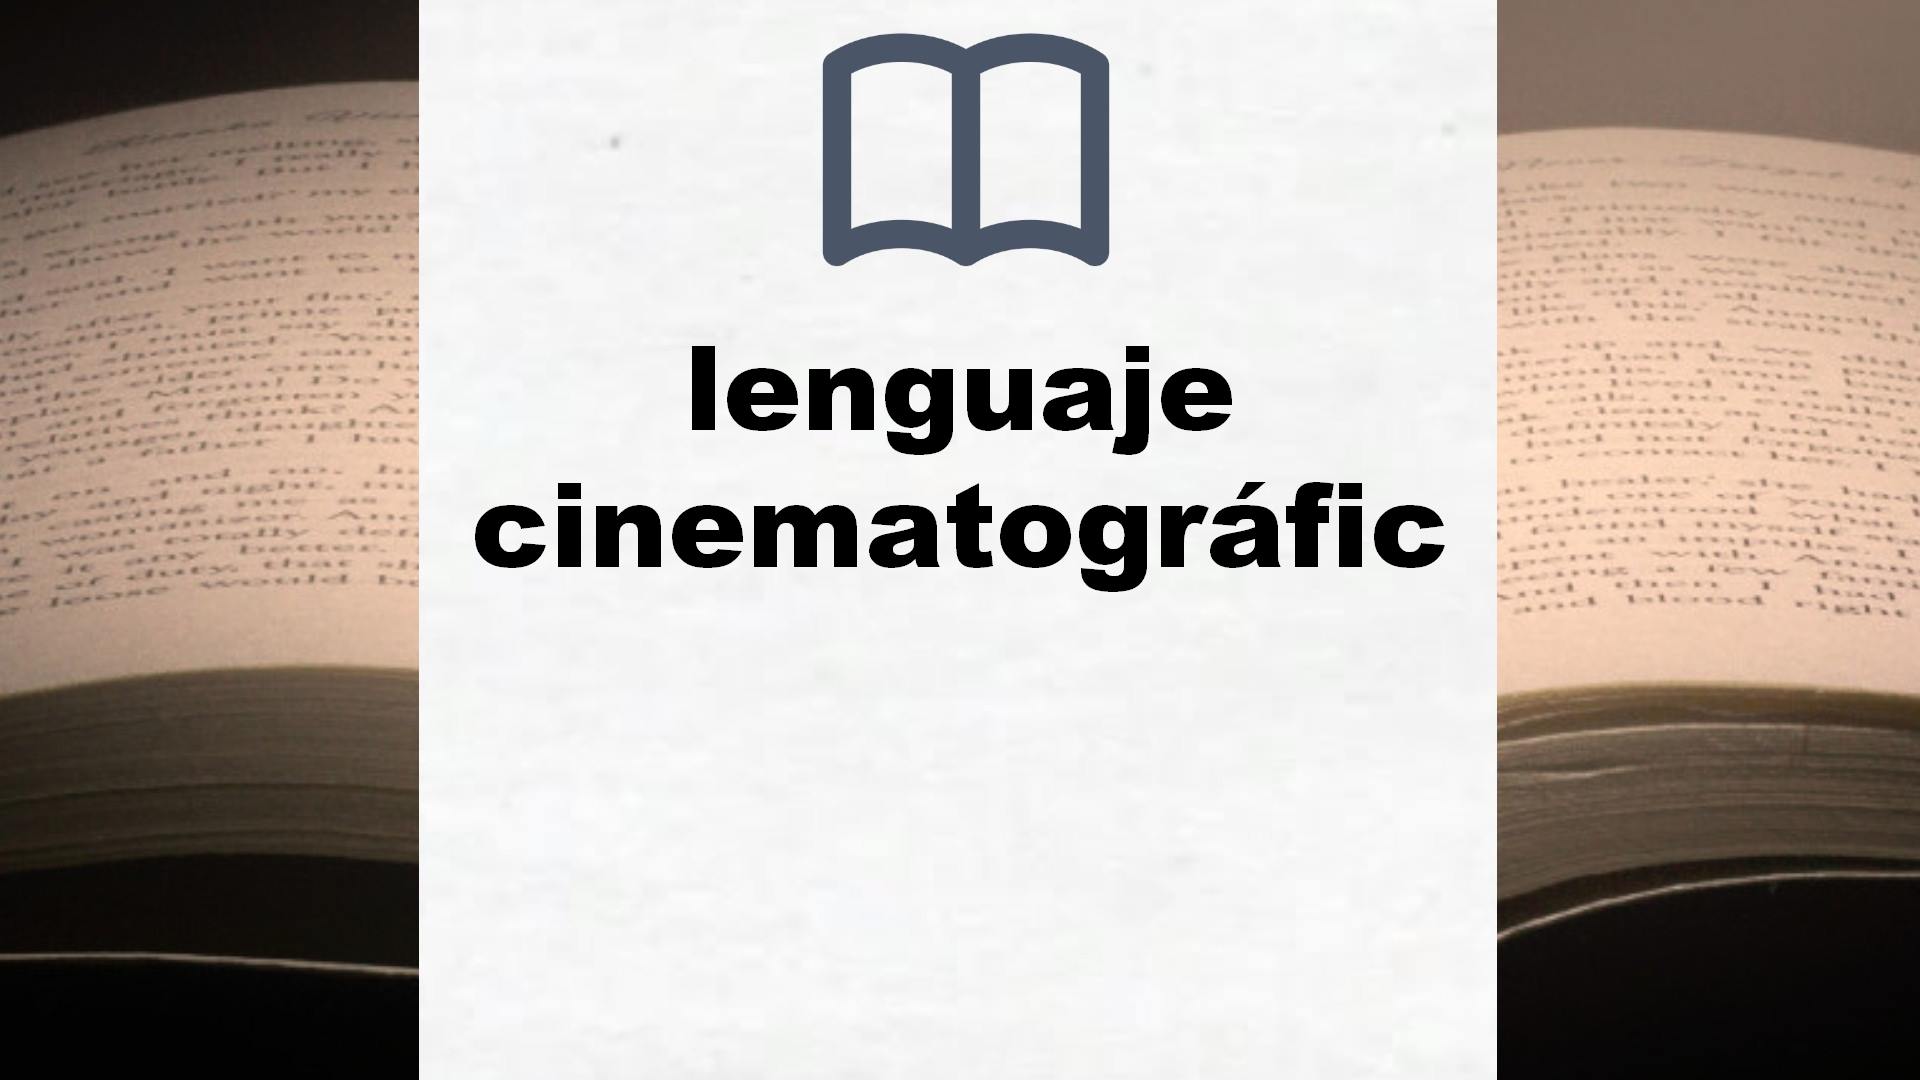 Libros sobre lenguaje cinematográfico